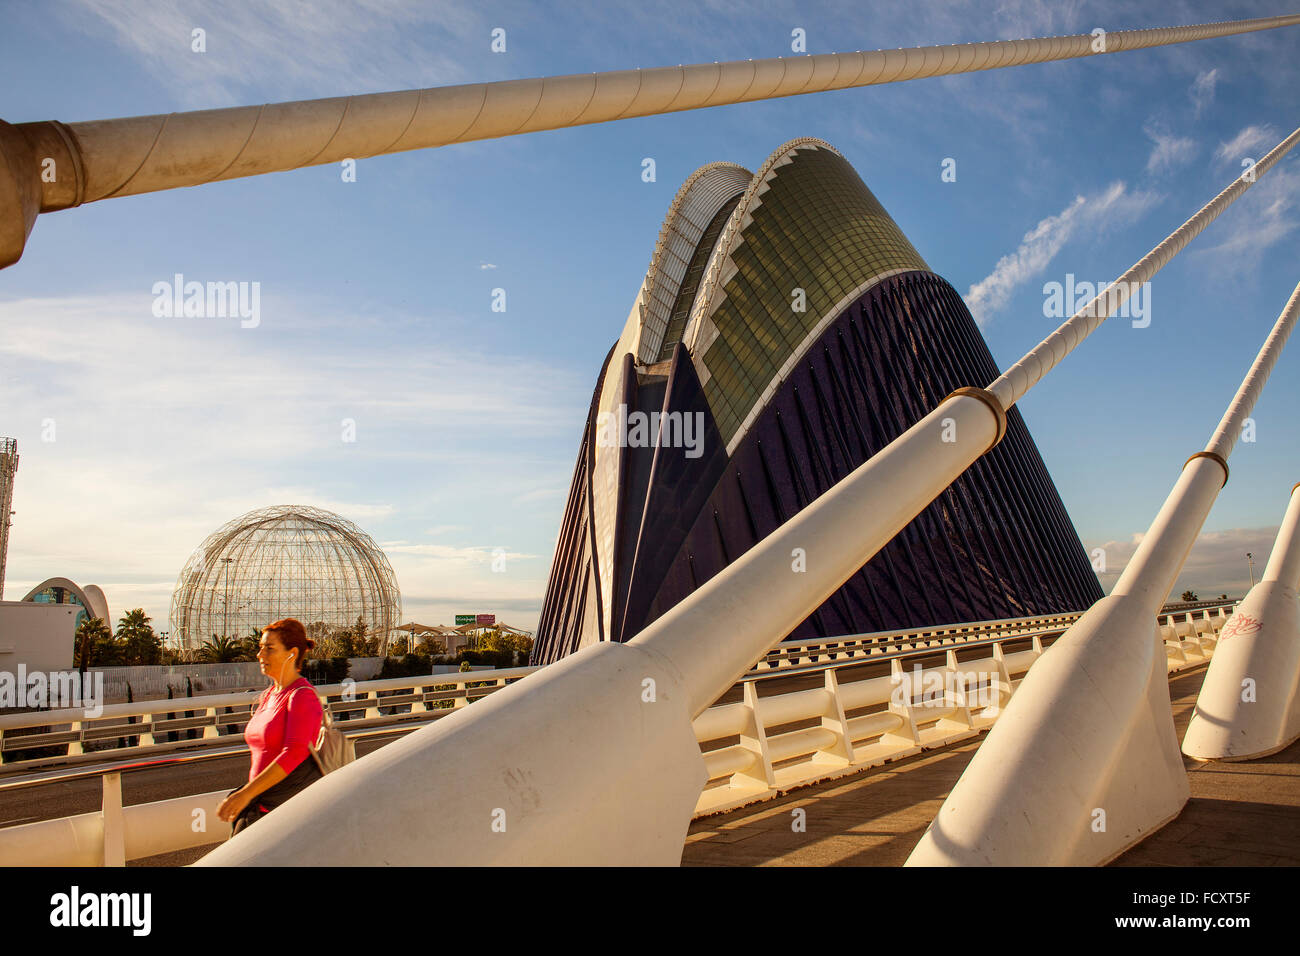 El Pont de l'Assut de l'Or and L'Agora, in City of Arts and Sciences. Valencia, Spain. Stock Photo